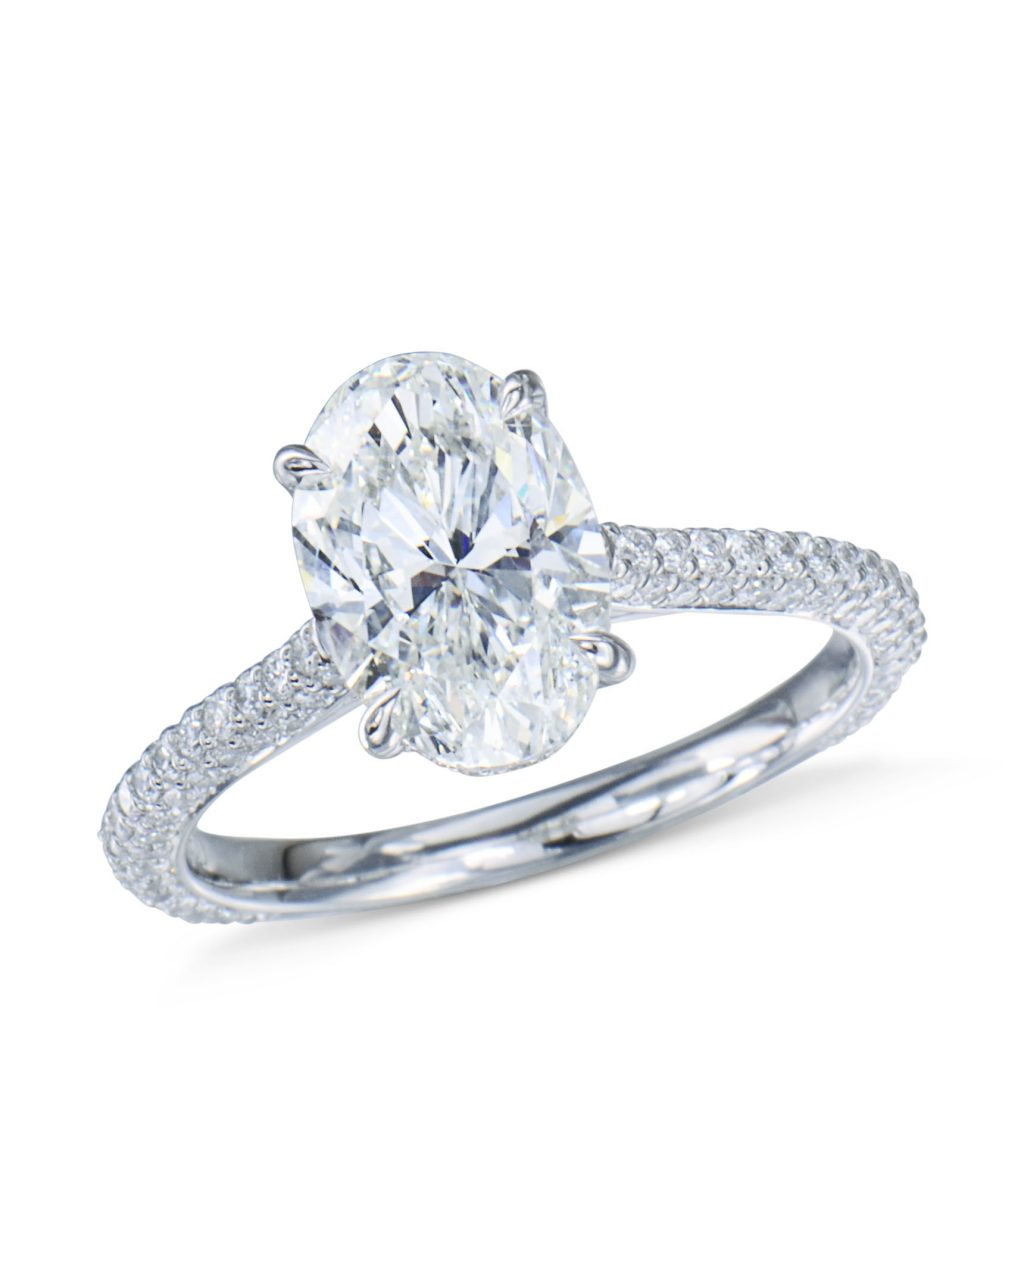 Splendid Oval Pavé Diamond Engagement Ring - Turgeon Raine